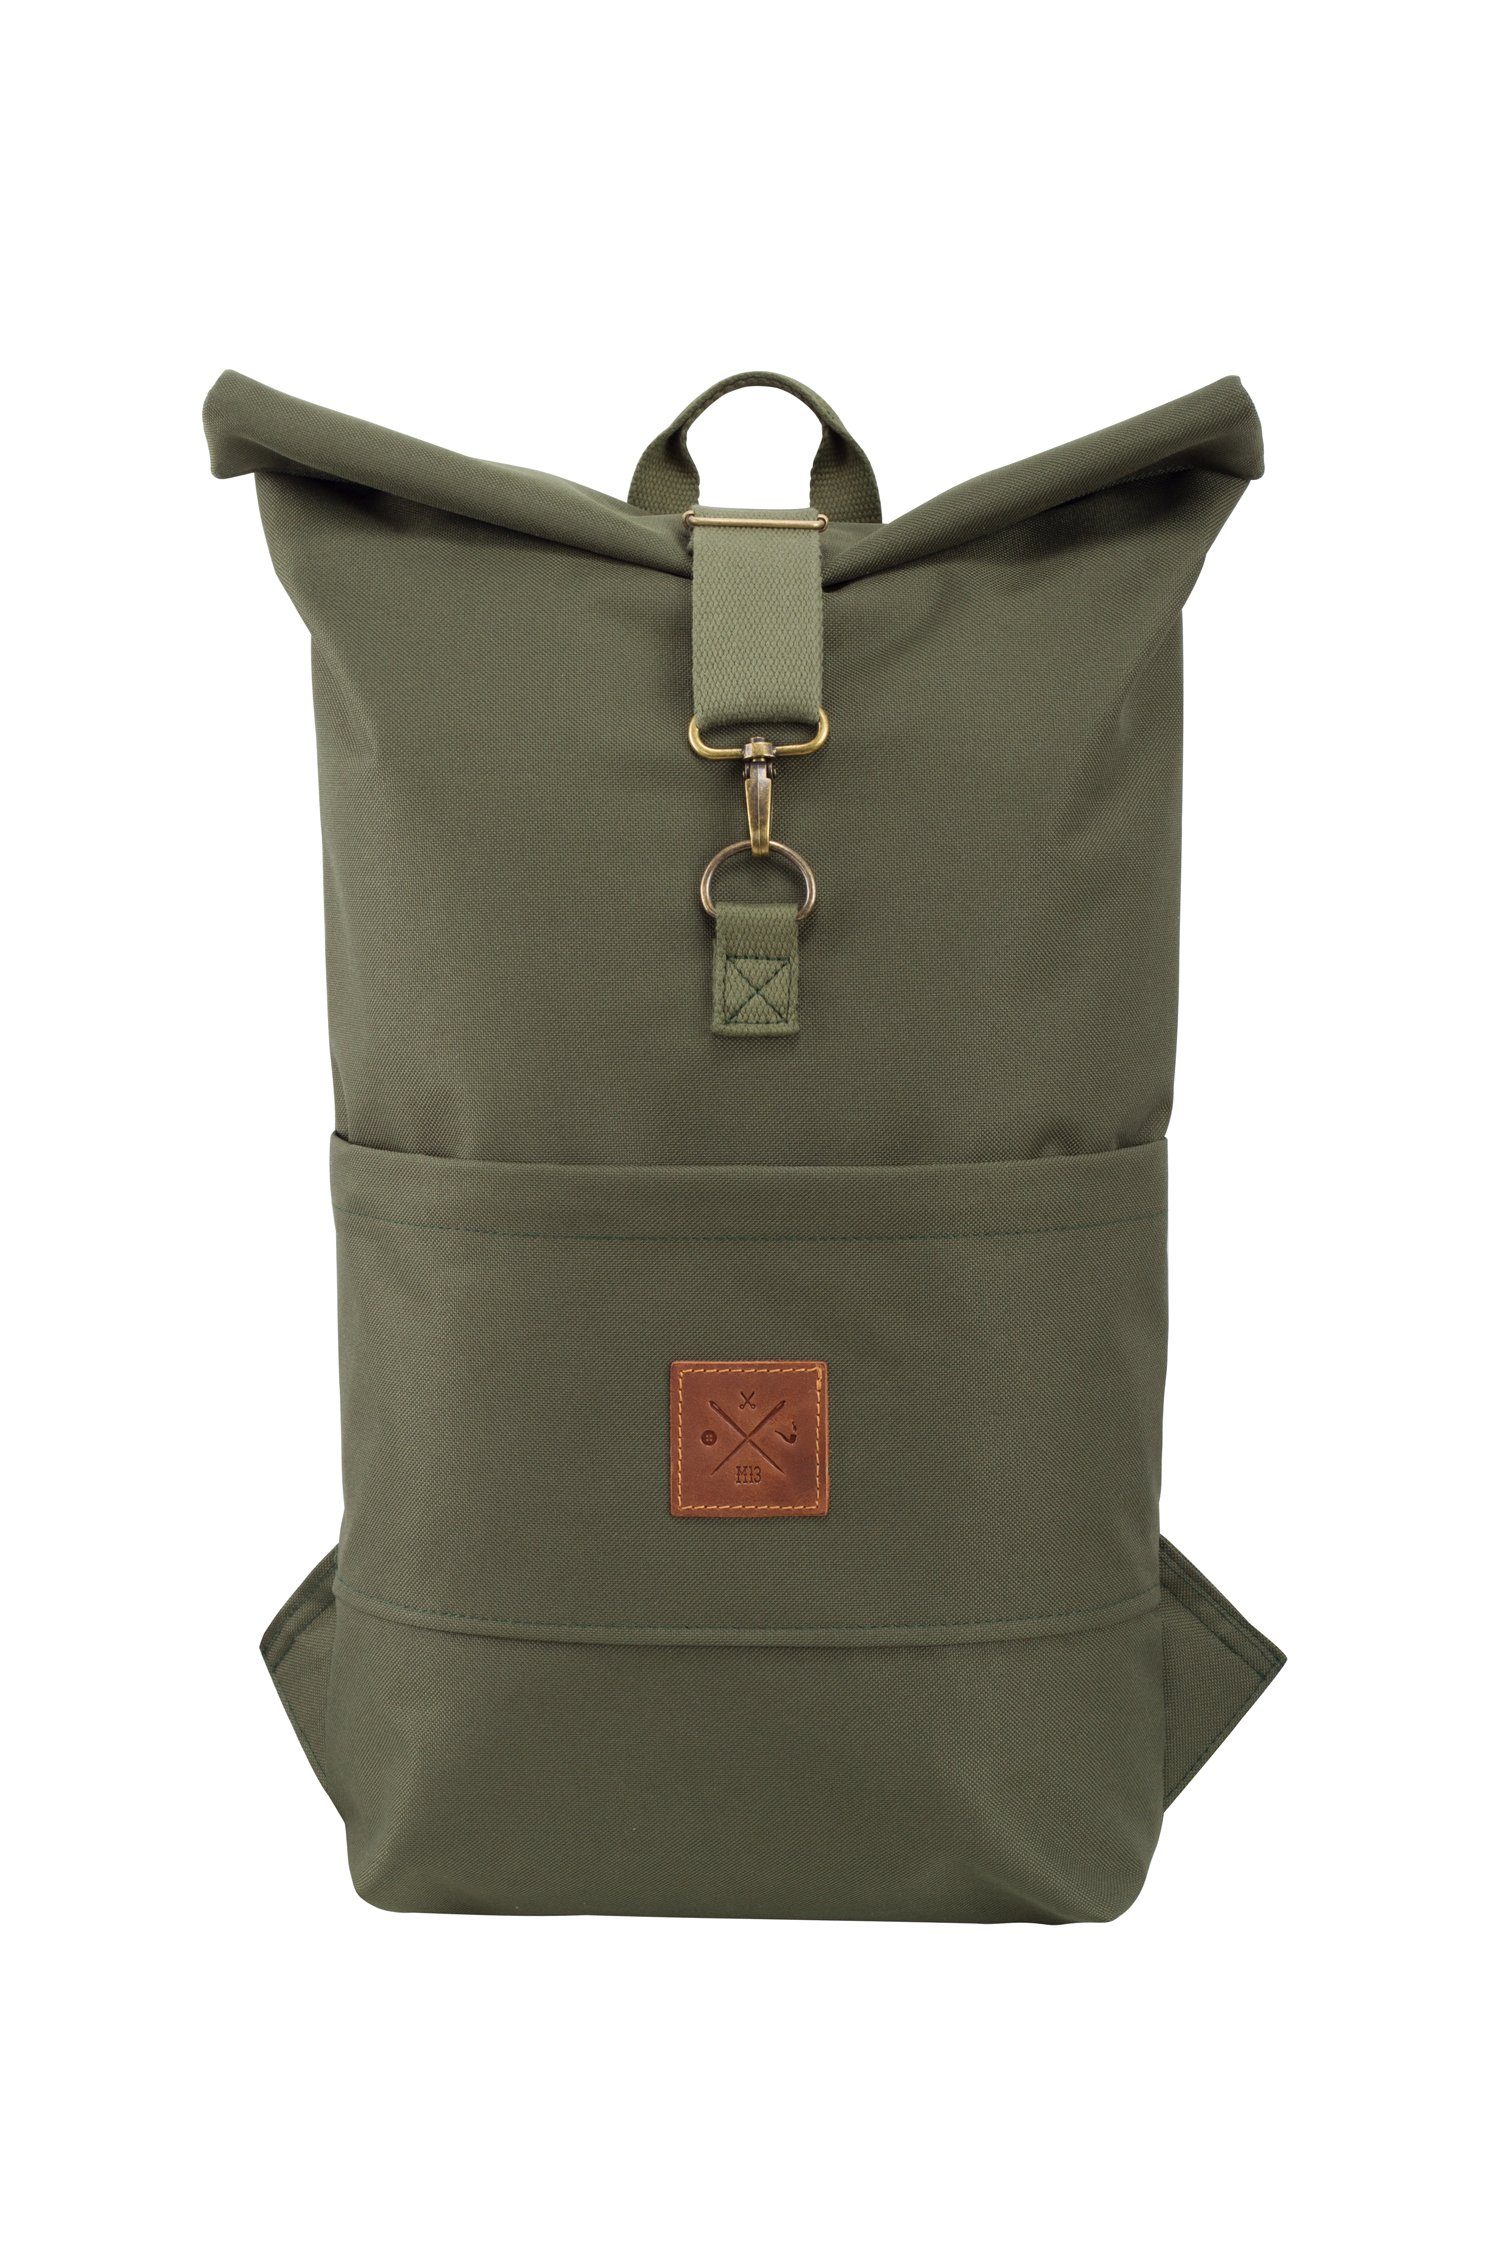 Manufaktur13 Tagesrucksack Roll-Top Backpack - Rucksack mit Rollverschluss, wasserdicht/wasserabweisend, verstellbare Gurte Dazzle